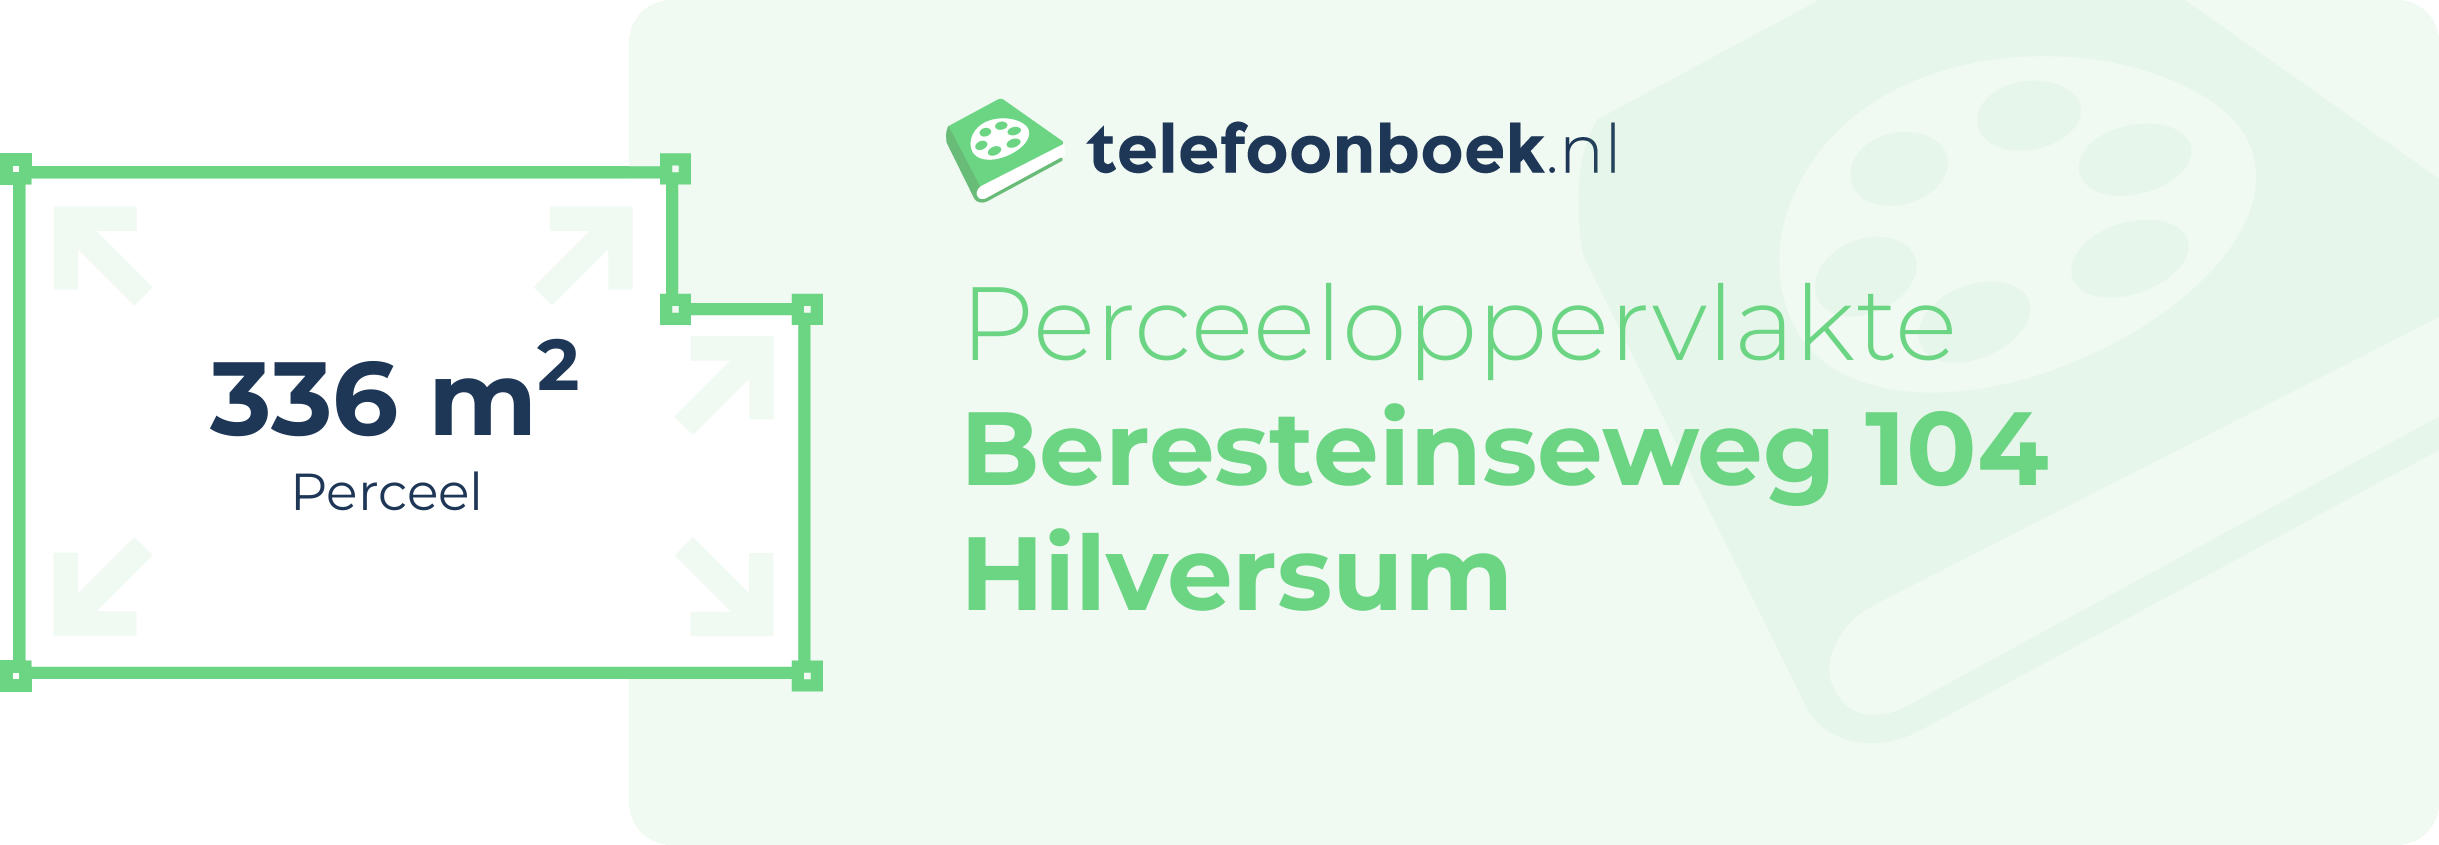 Perceeloppervlakte Beresteinseweg 104 Hilversum